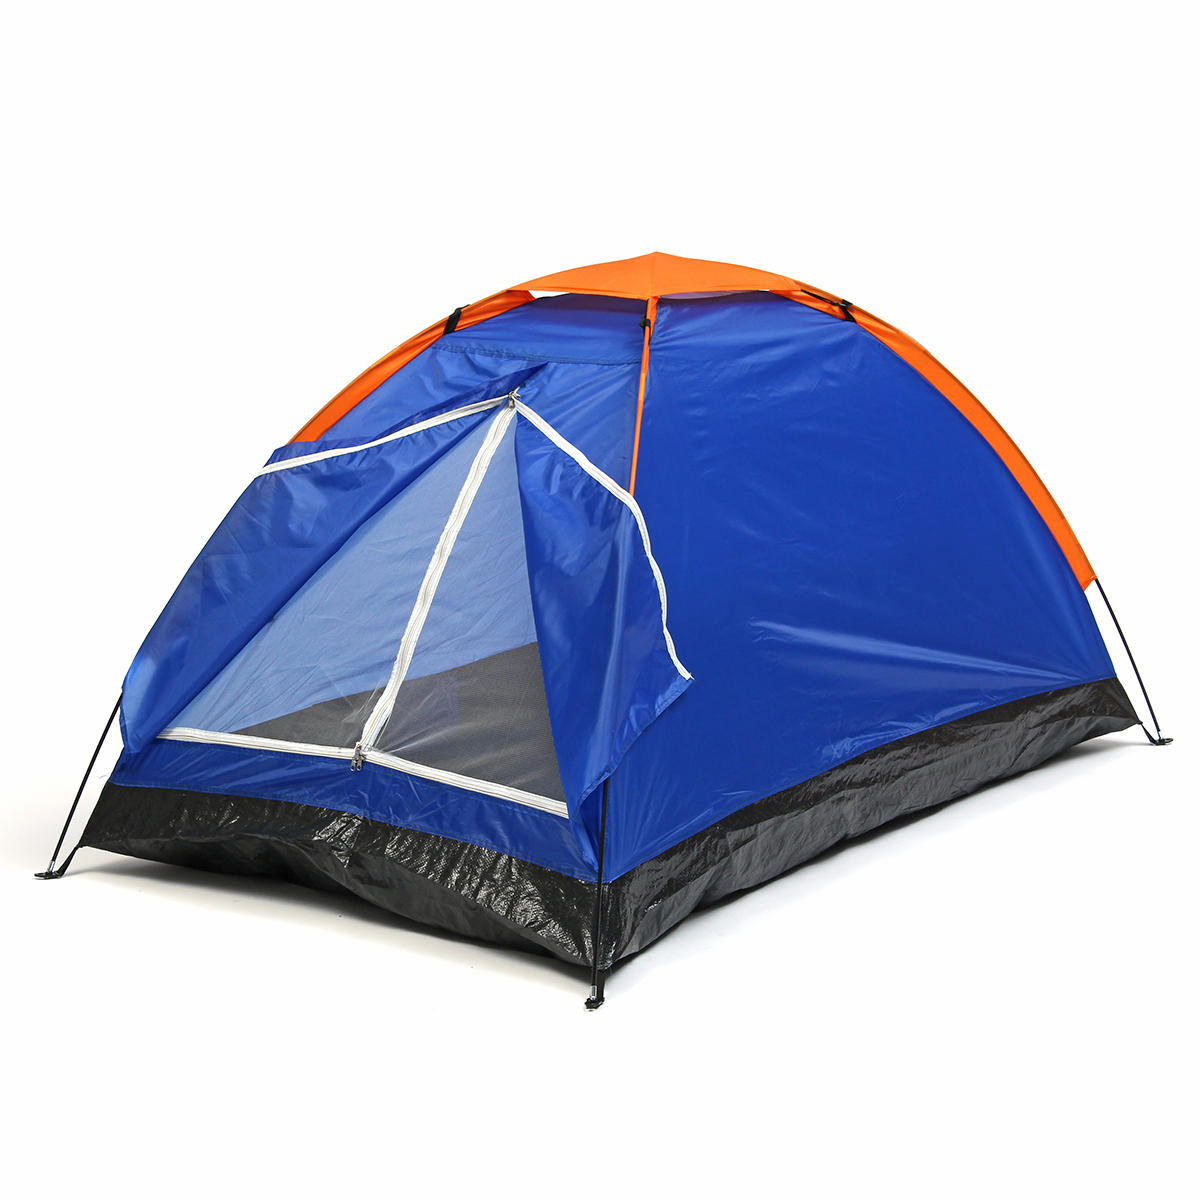 Outdoor 1-2 Pessoa Double Camping Tent Camada única impermeável UV Praia Sunshade Canopy